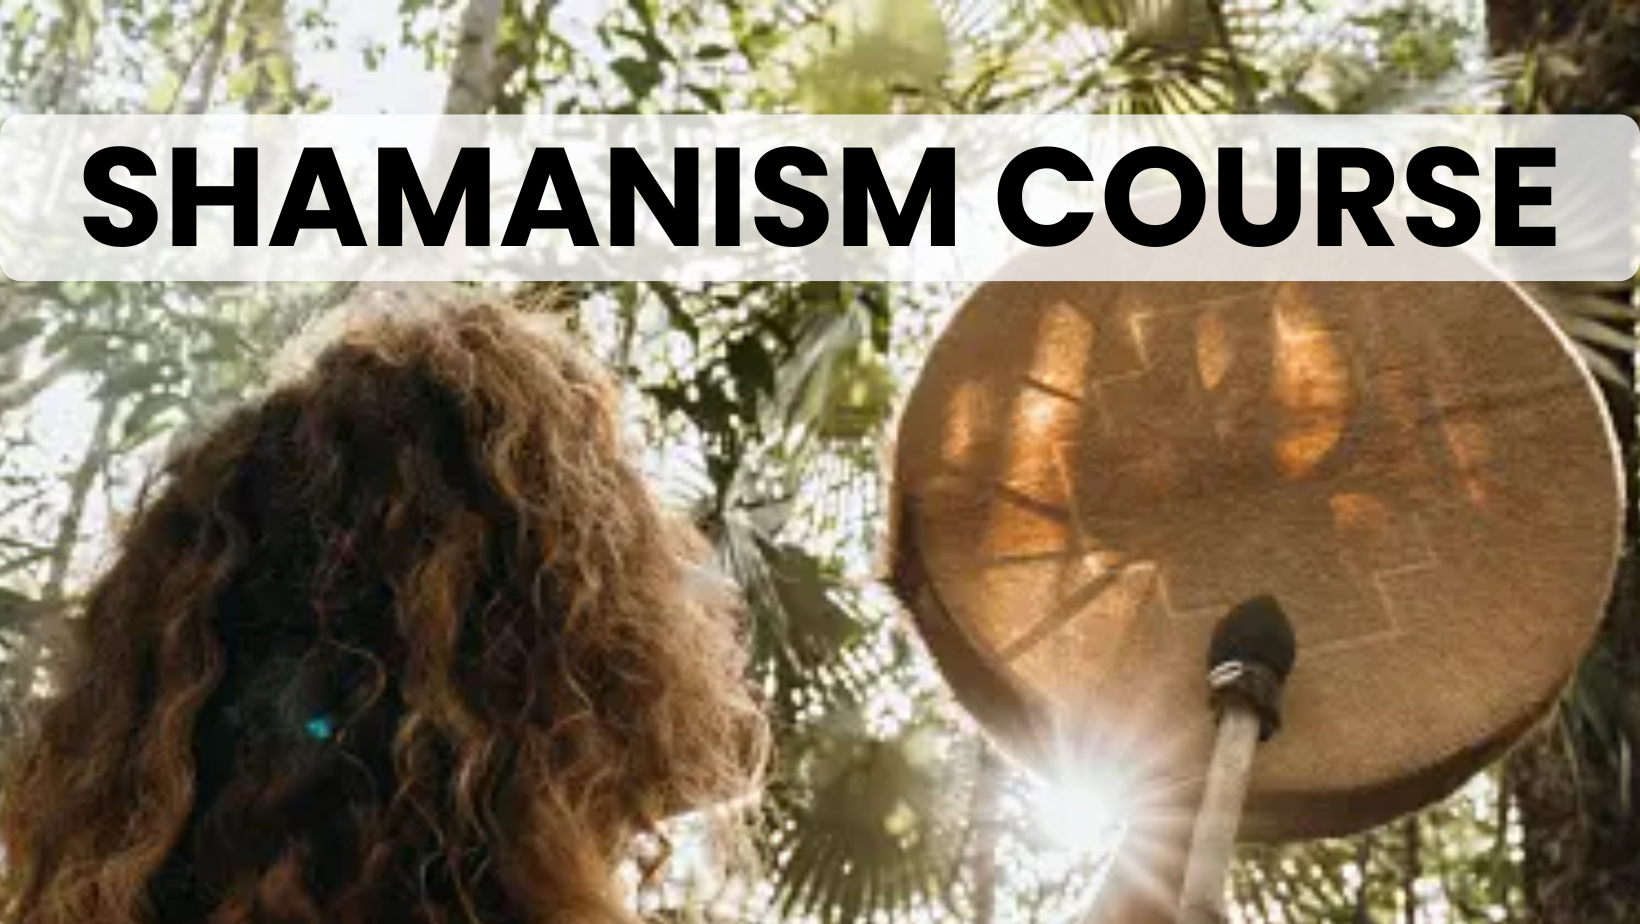 Shamanism Courses in Nashik